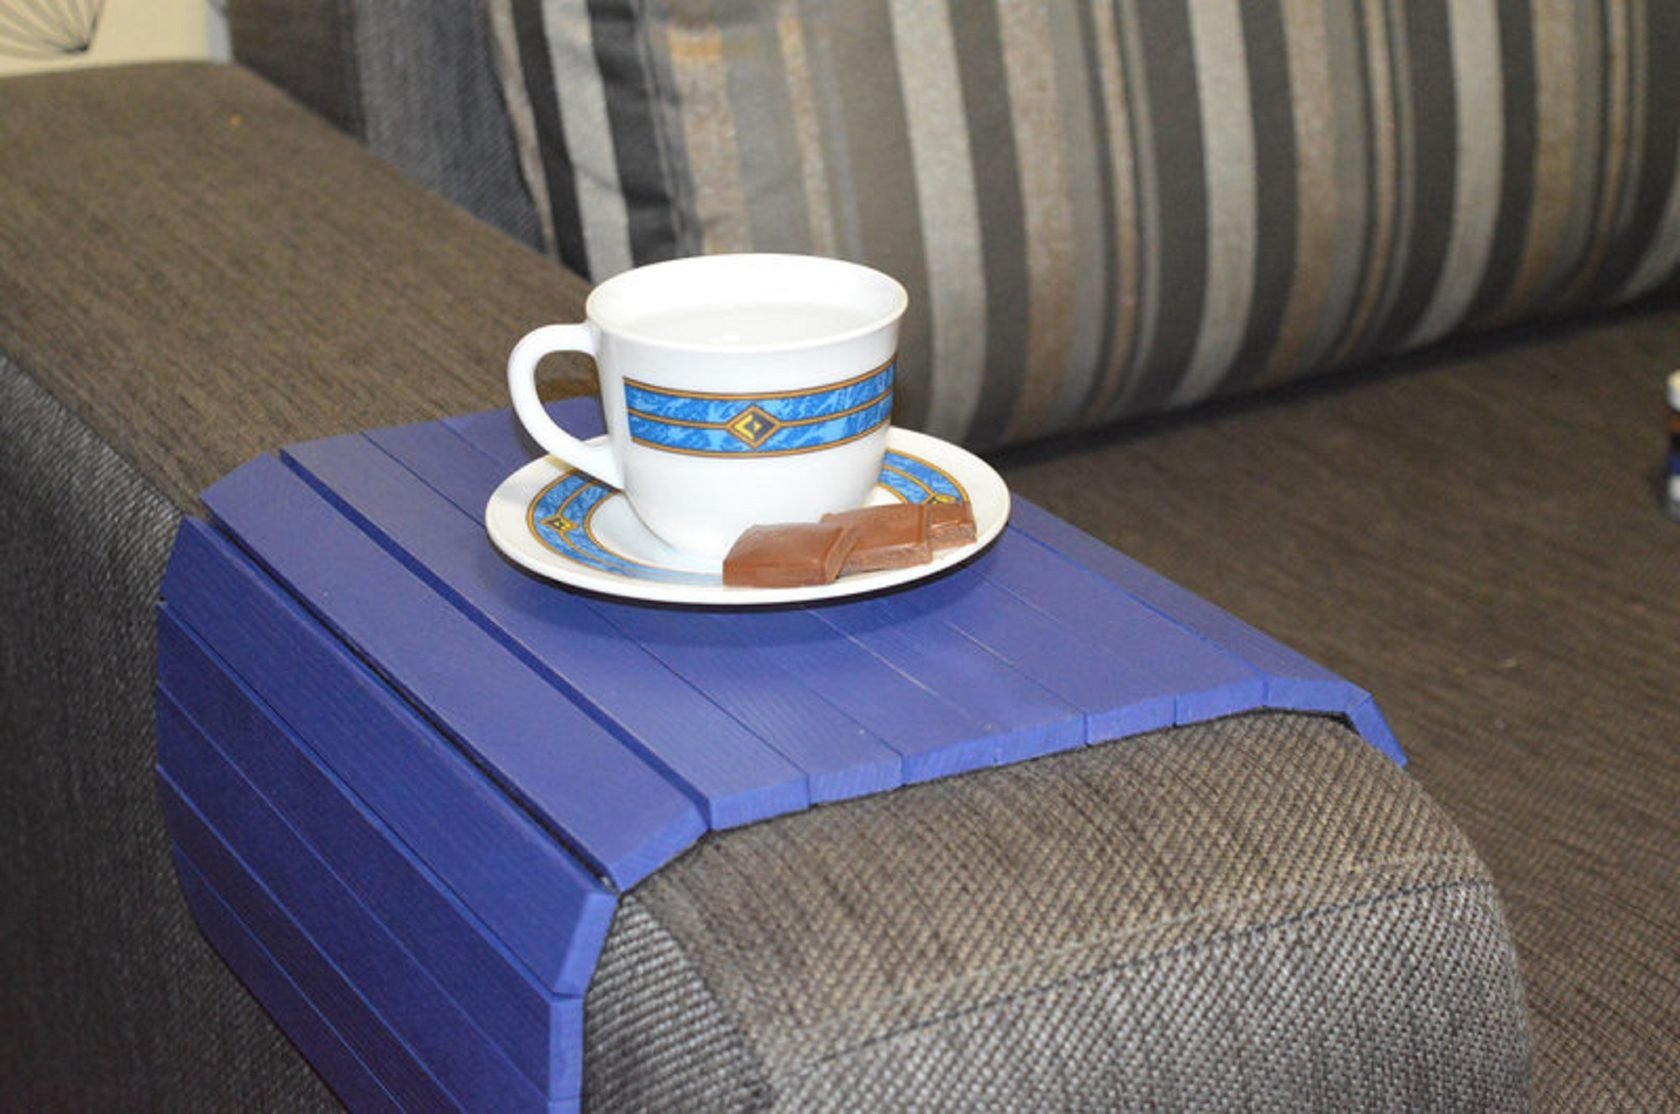 Деревянная накладка, столик, коврик на подлокотник дивана(синий) #2i2ua